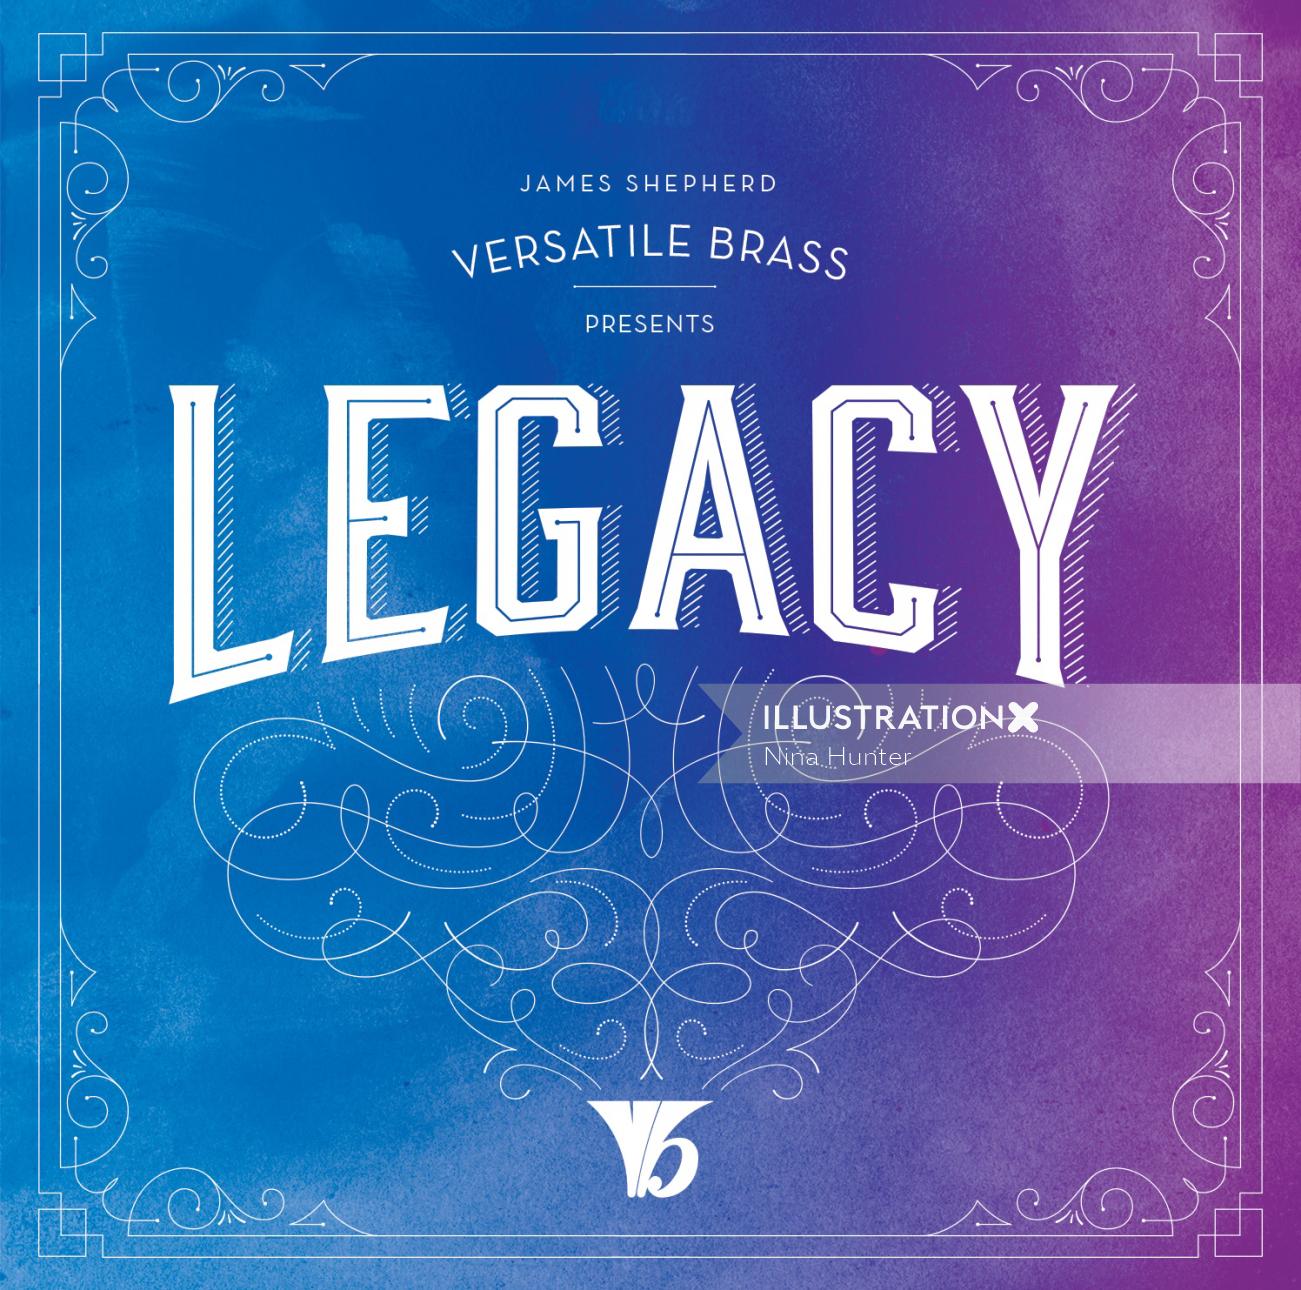 Cover design for Legacy album